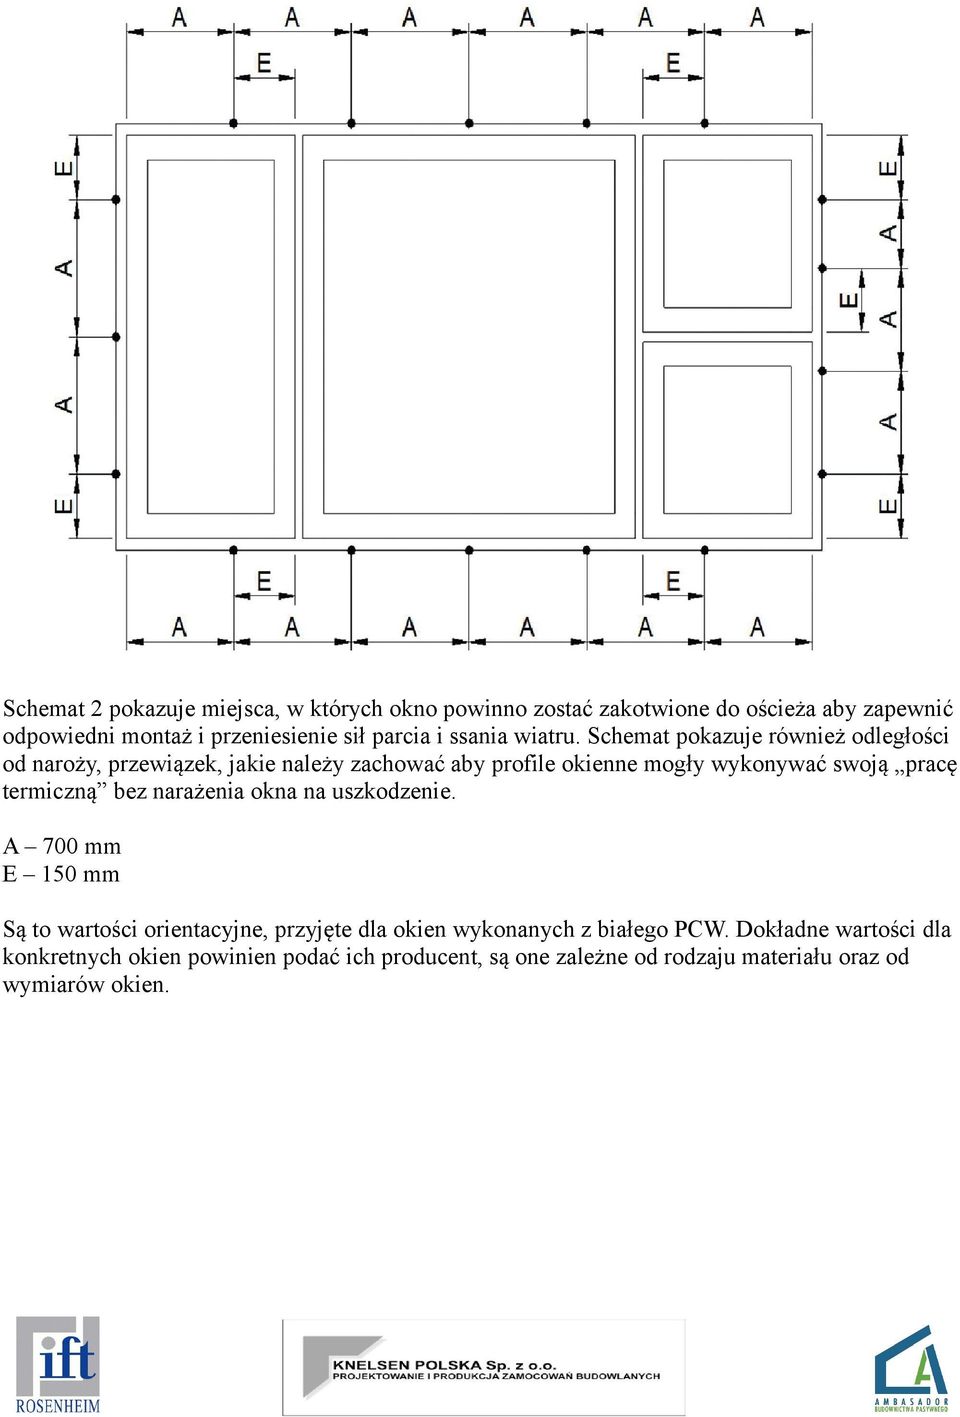 Schemat pokazuje również odległości od naroży, przewiązek, jakie należy zachować aby profile okienne mogły wykonywać swoją pracę